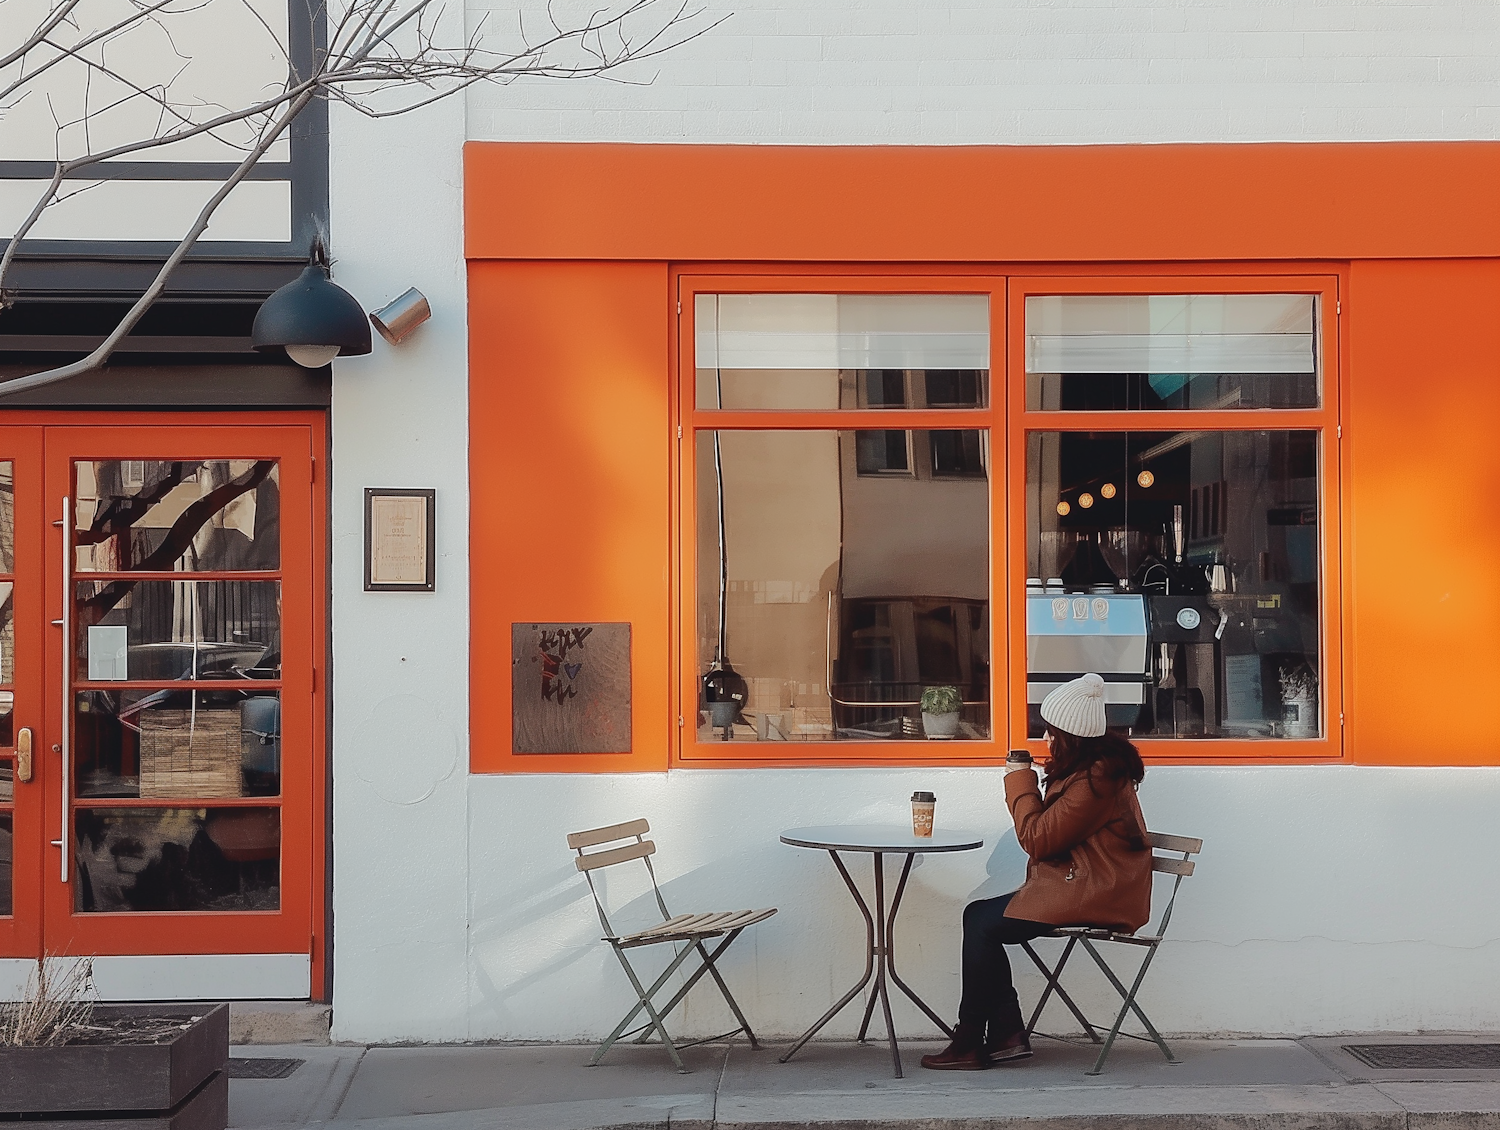 Urban Café Leisure Scene with Orange Backdrop